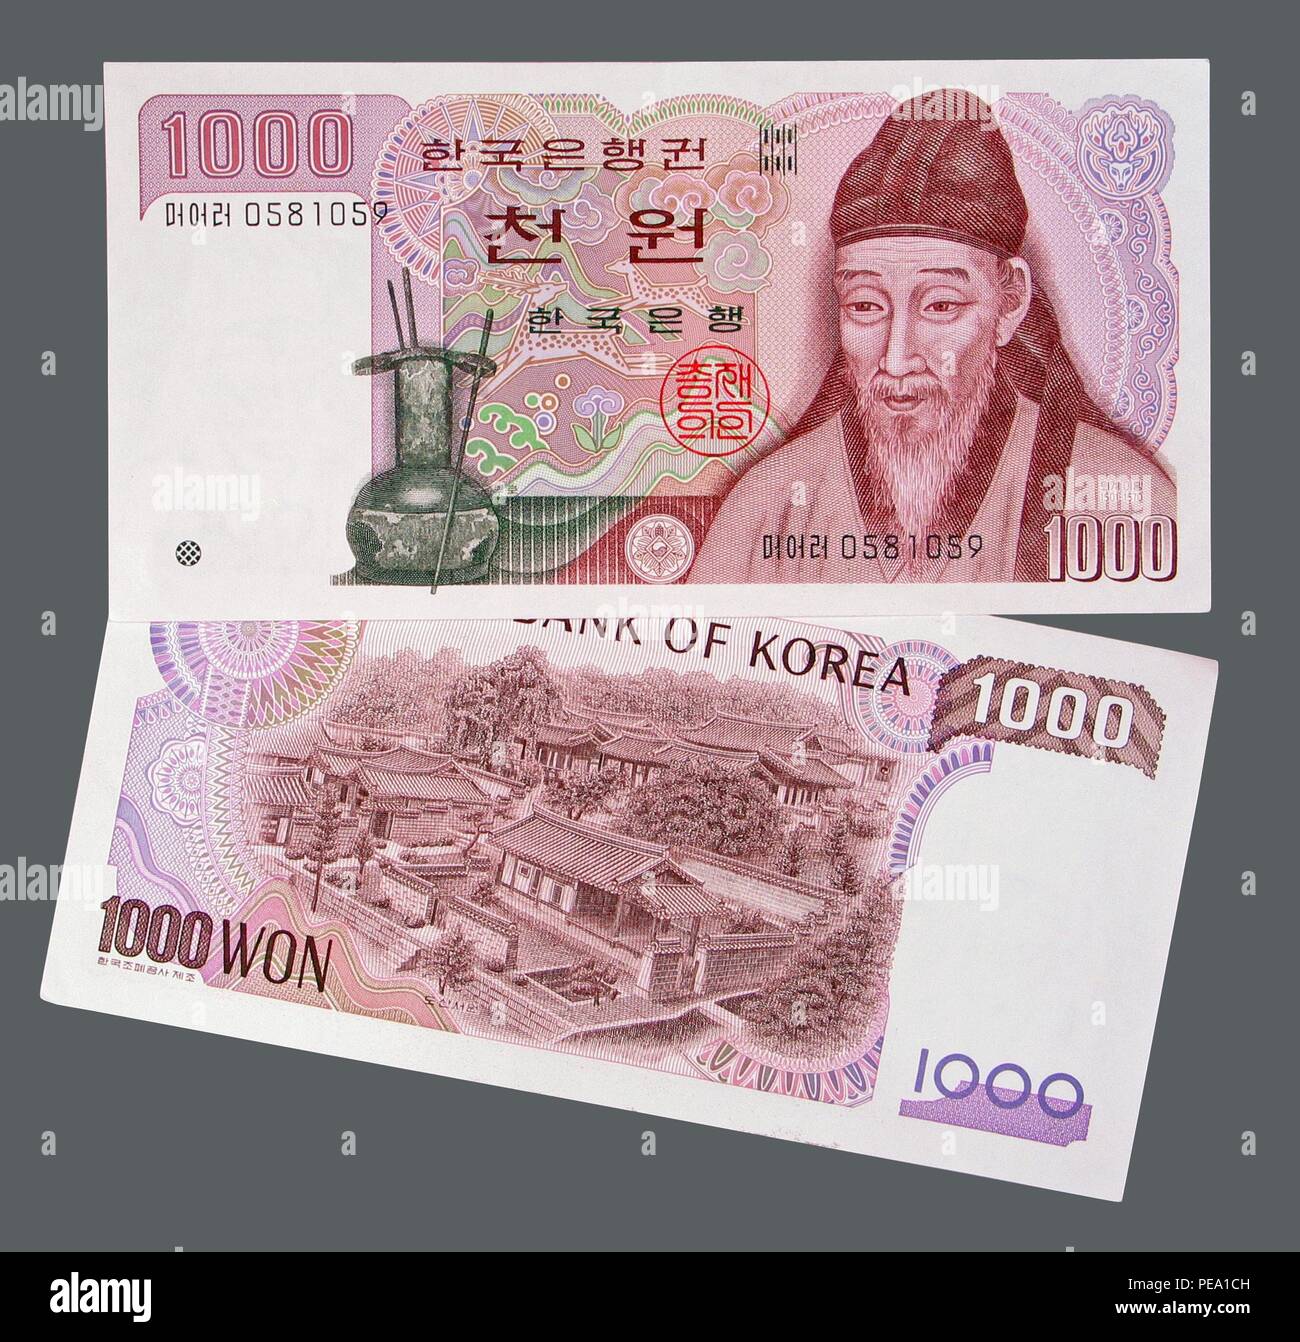 Die Vorder- und Rückseiten der Koreanischen 1000 gewann Banknote - Scholar Yi Hwang ist, dargestellt auf der Vorderseite der Rechnung und der Dosan Seowon (a Stockfoto